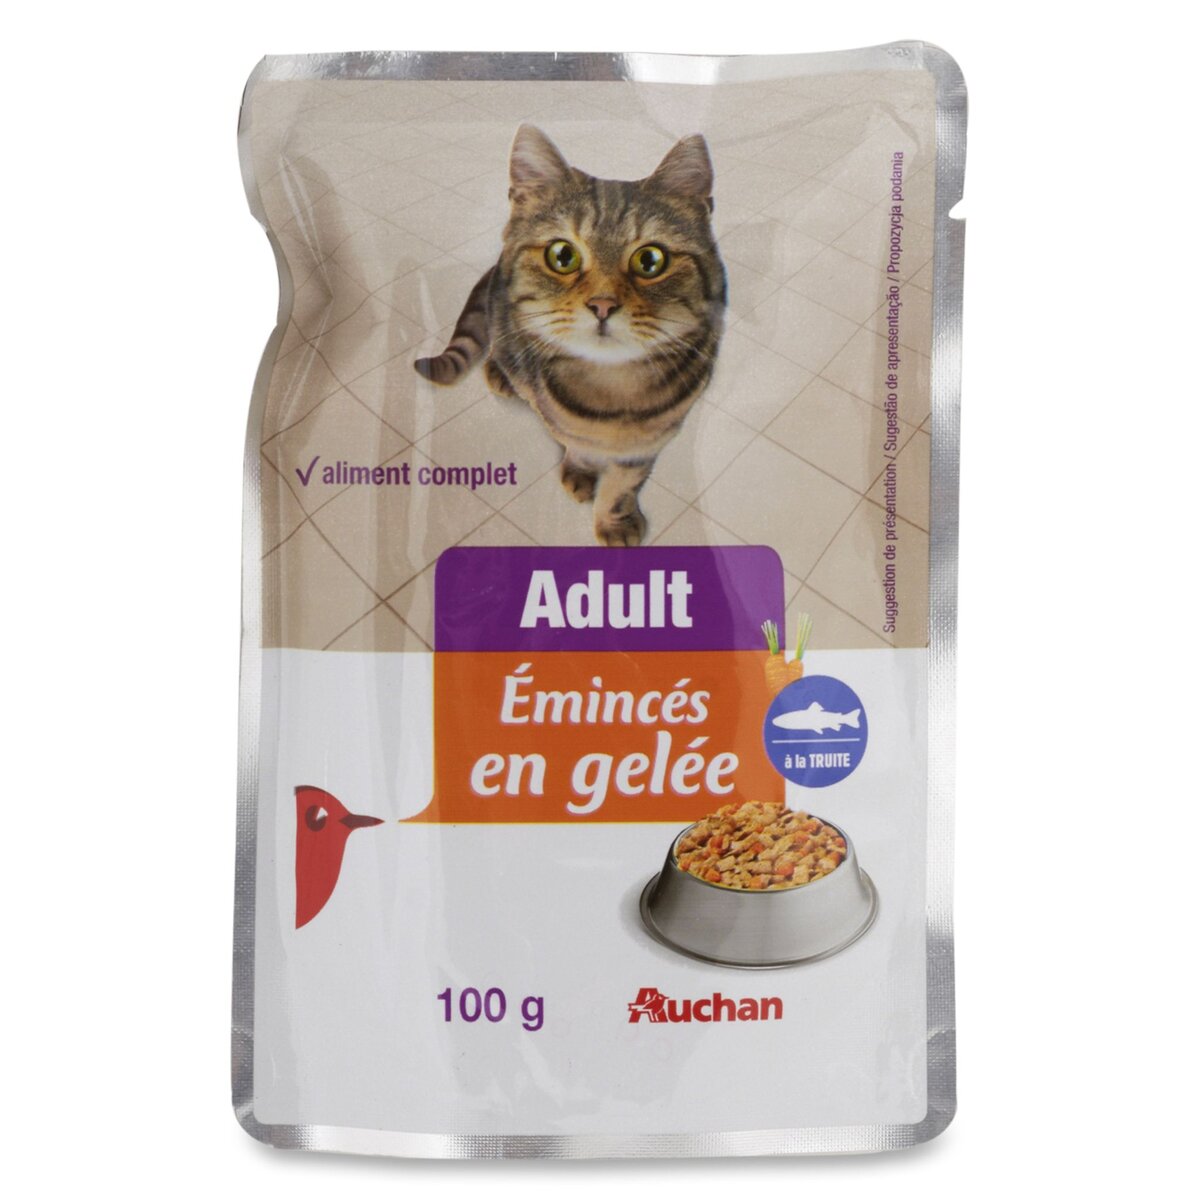 AUCHAN Auchan Adult sachet repas émincés de pâtée en gelée truite pour chat 100g 100g